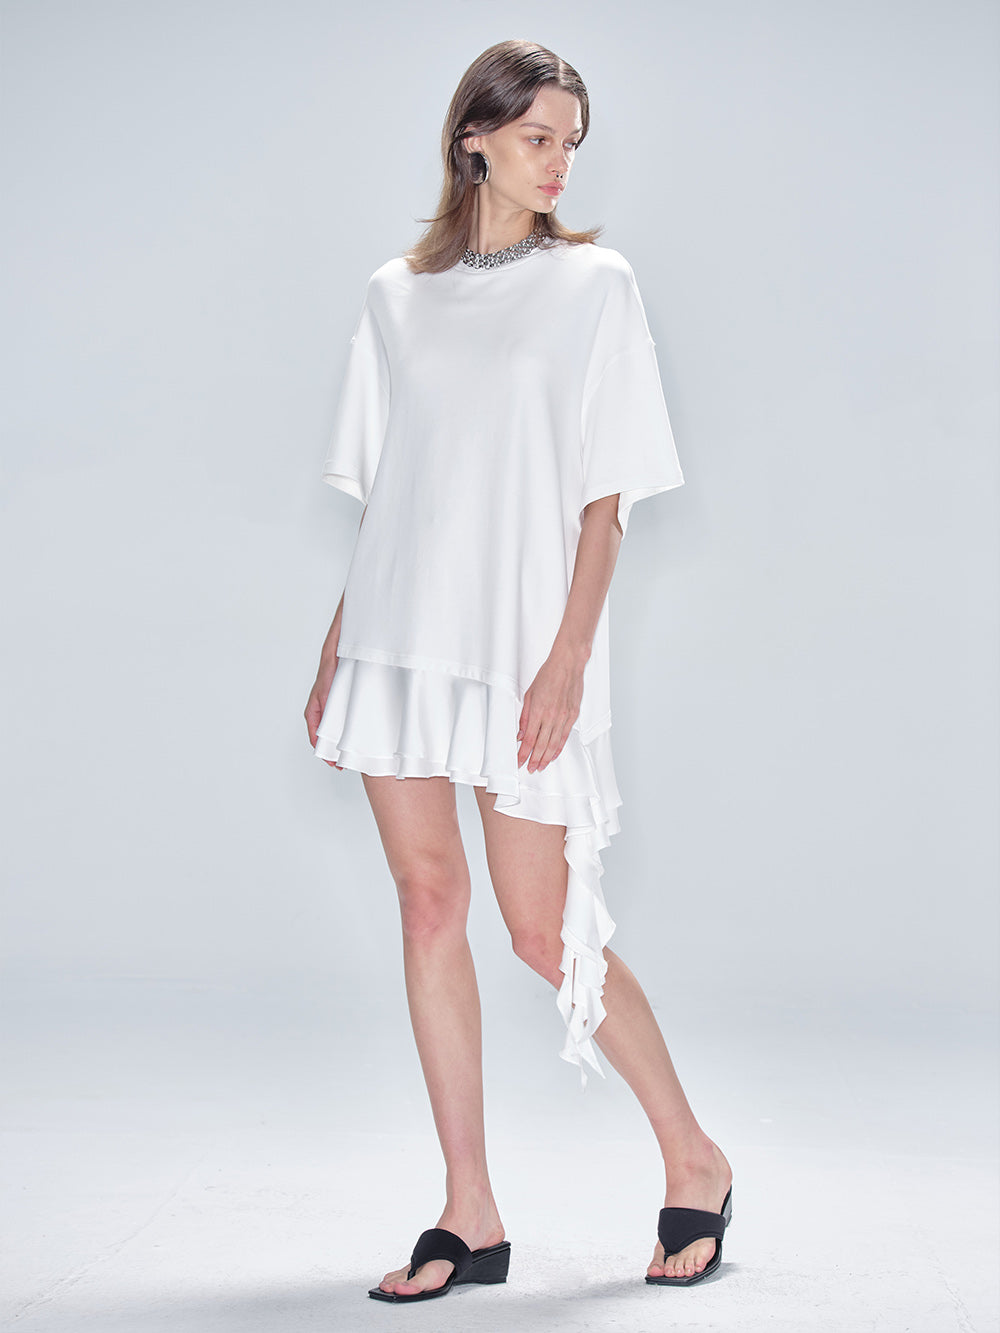 MUKTANK x MODULER Cotton Loose Asymmetrical Ruffle Design T-Shirt Dress